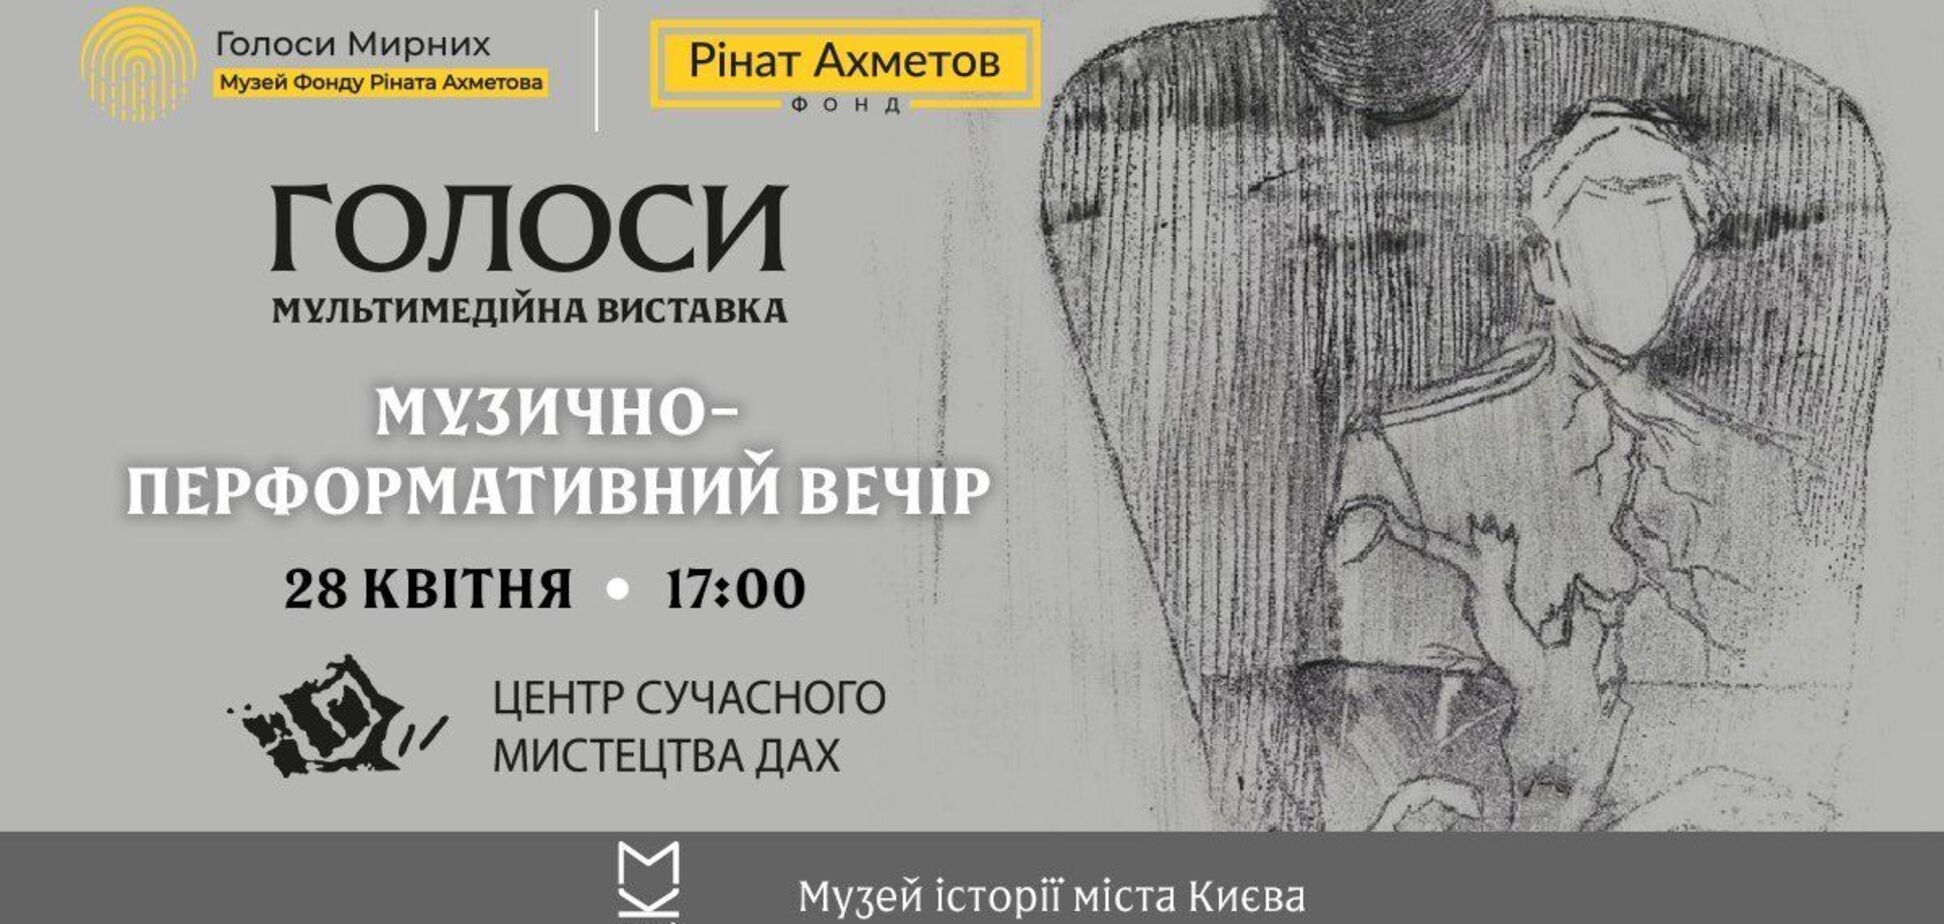 Вірші Стуса і Шевченка: на виставці 'Голоси' відбудеться музично-перформативний вечір